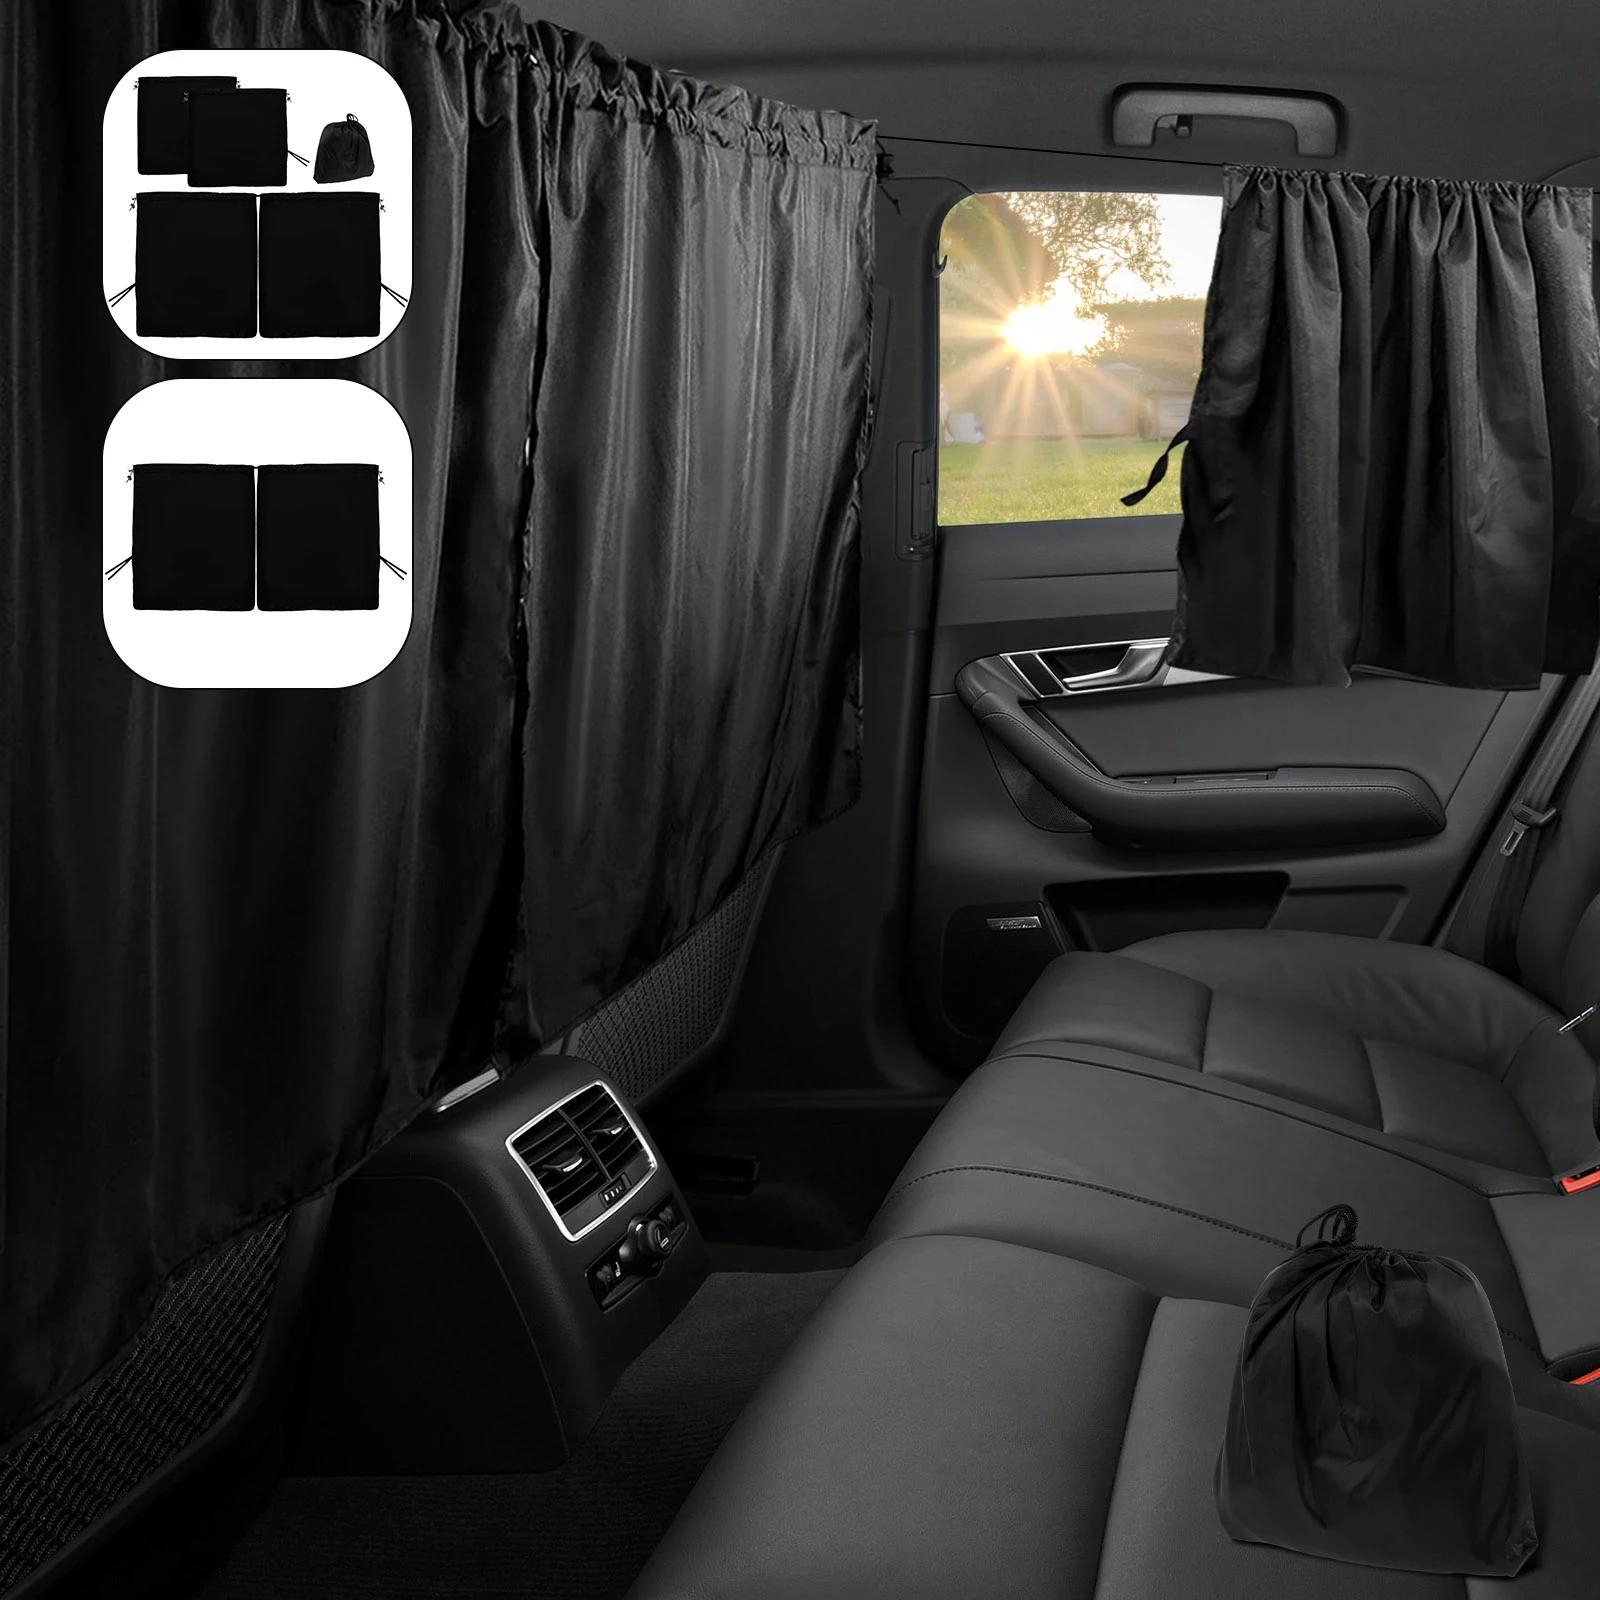 Auto Teiler Vorhänge Sonnenschutzprivacy Reise Nickerchen Nacht Auto  Camping Abnehmbar Einfacher Vorhang (schwarz)